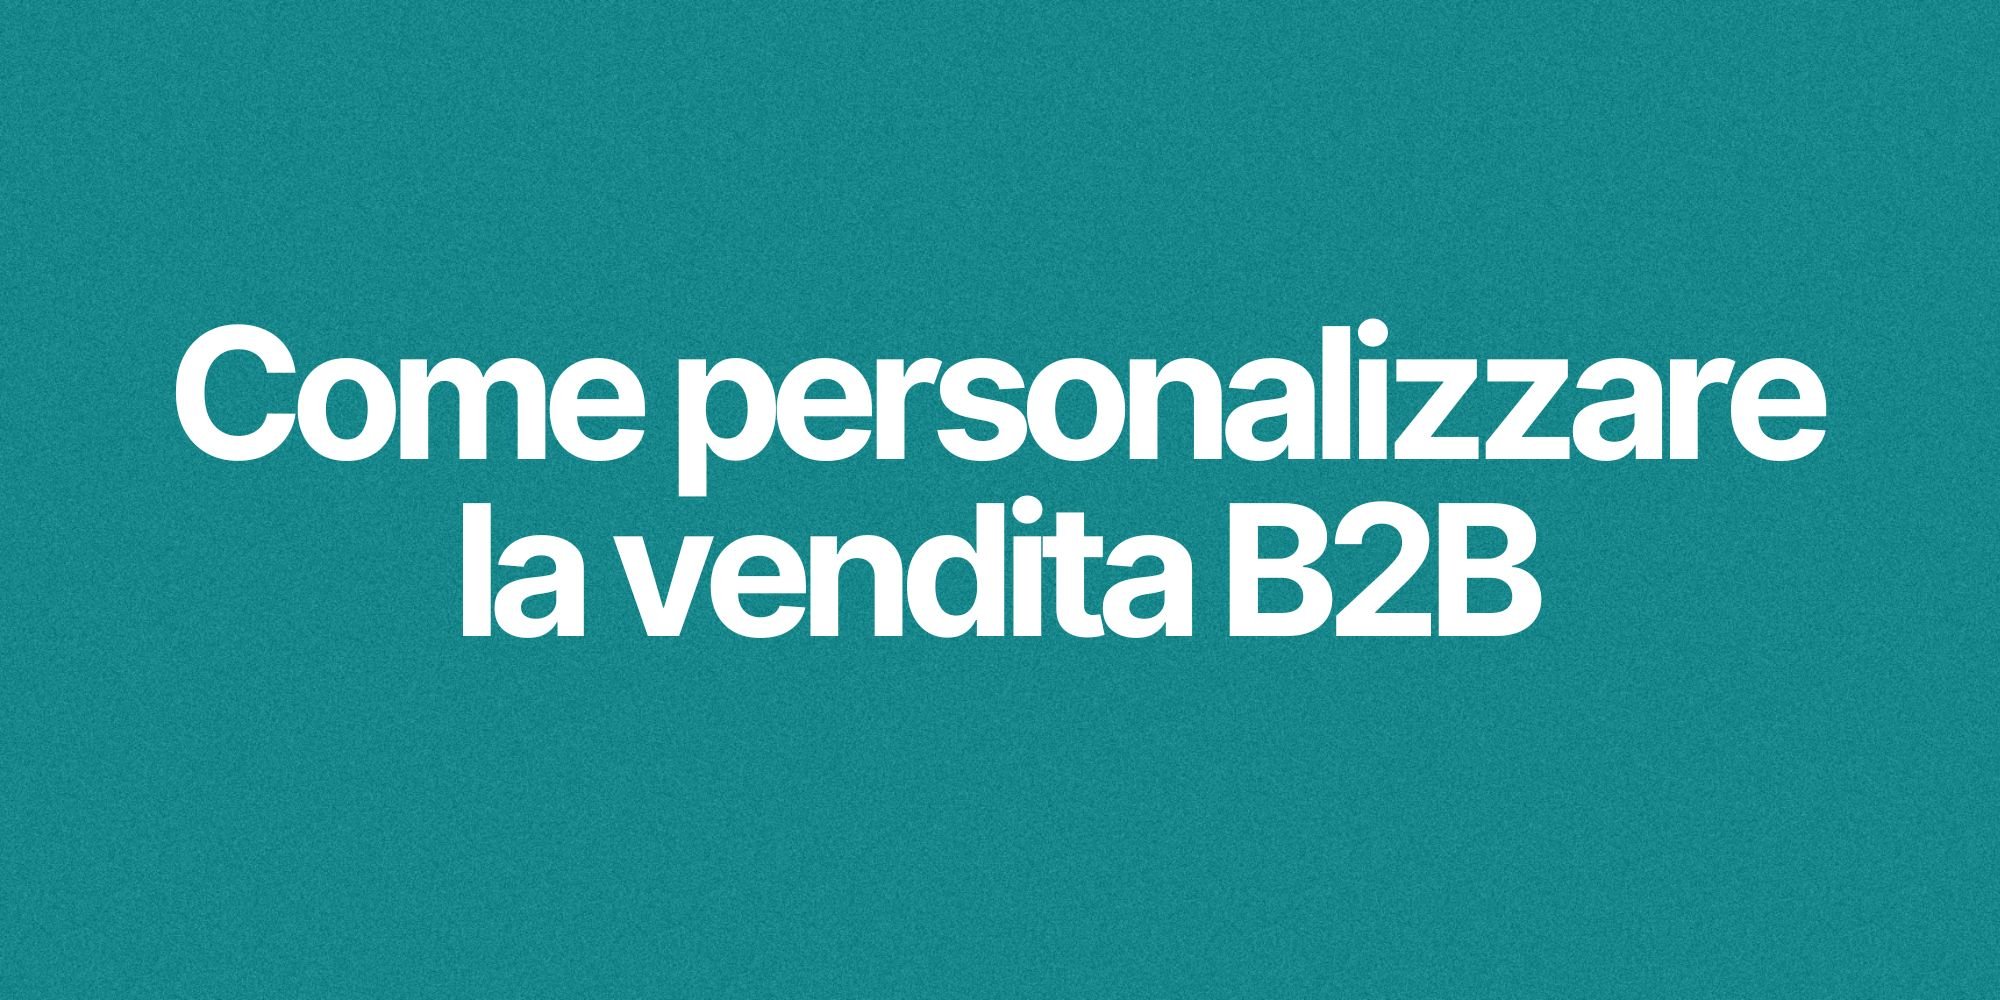 Come Personalizzare la vendita B2B